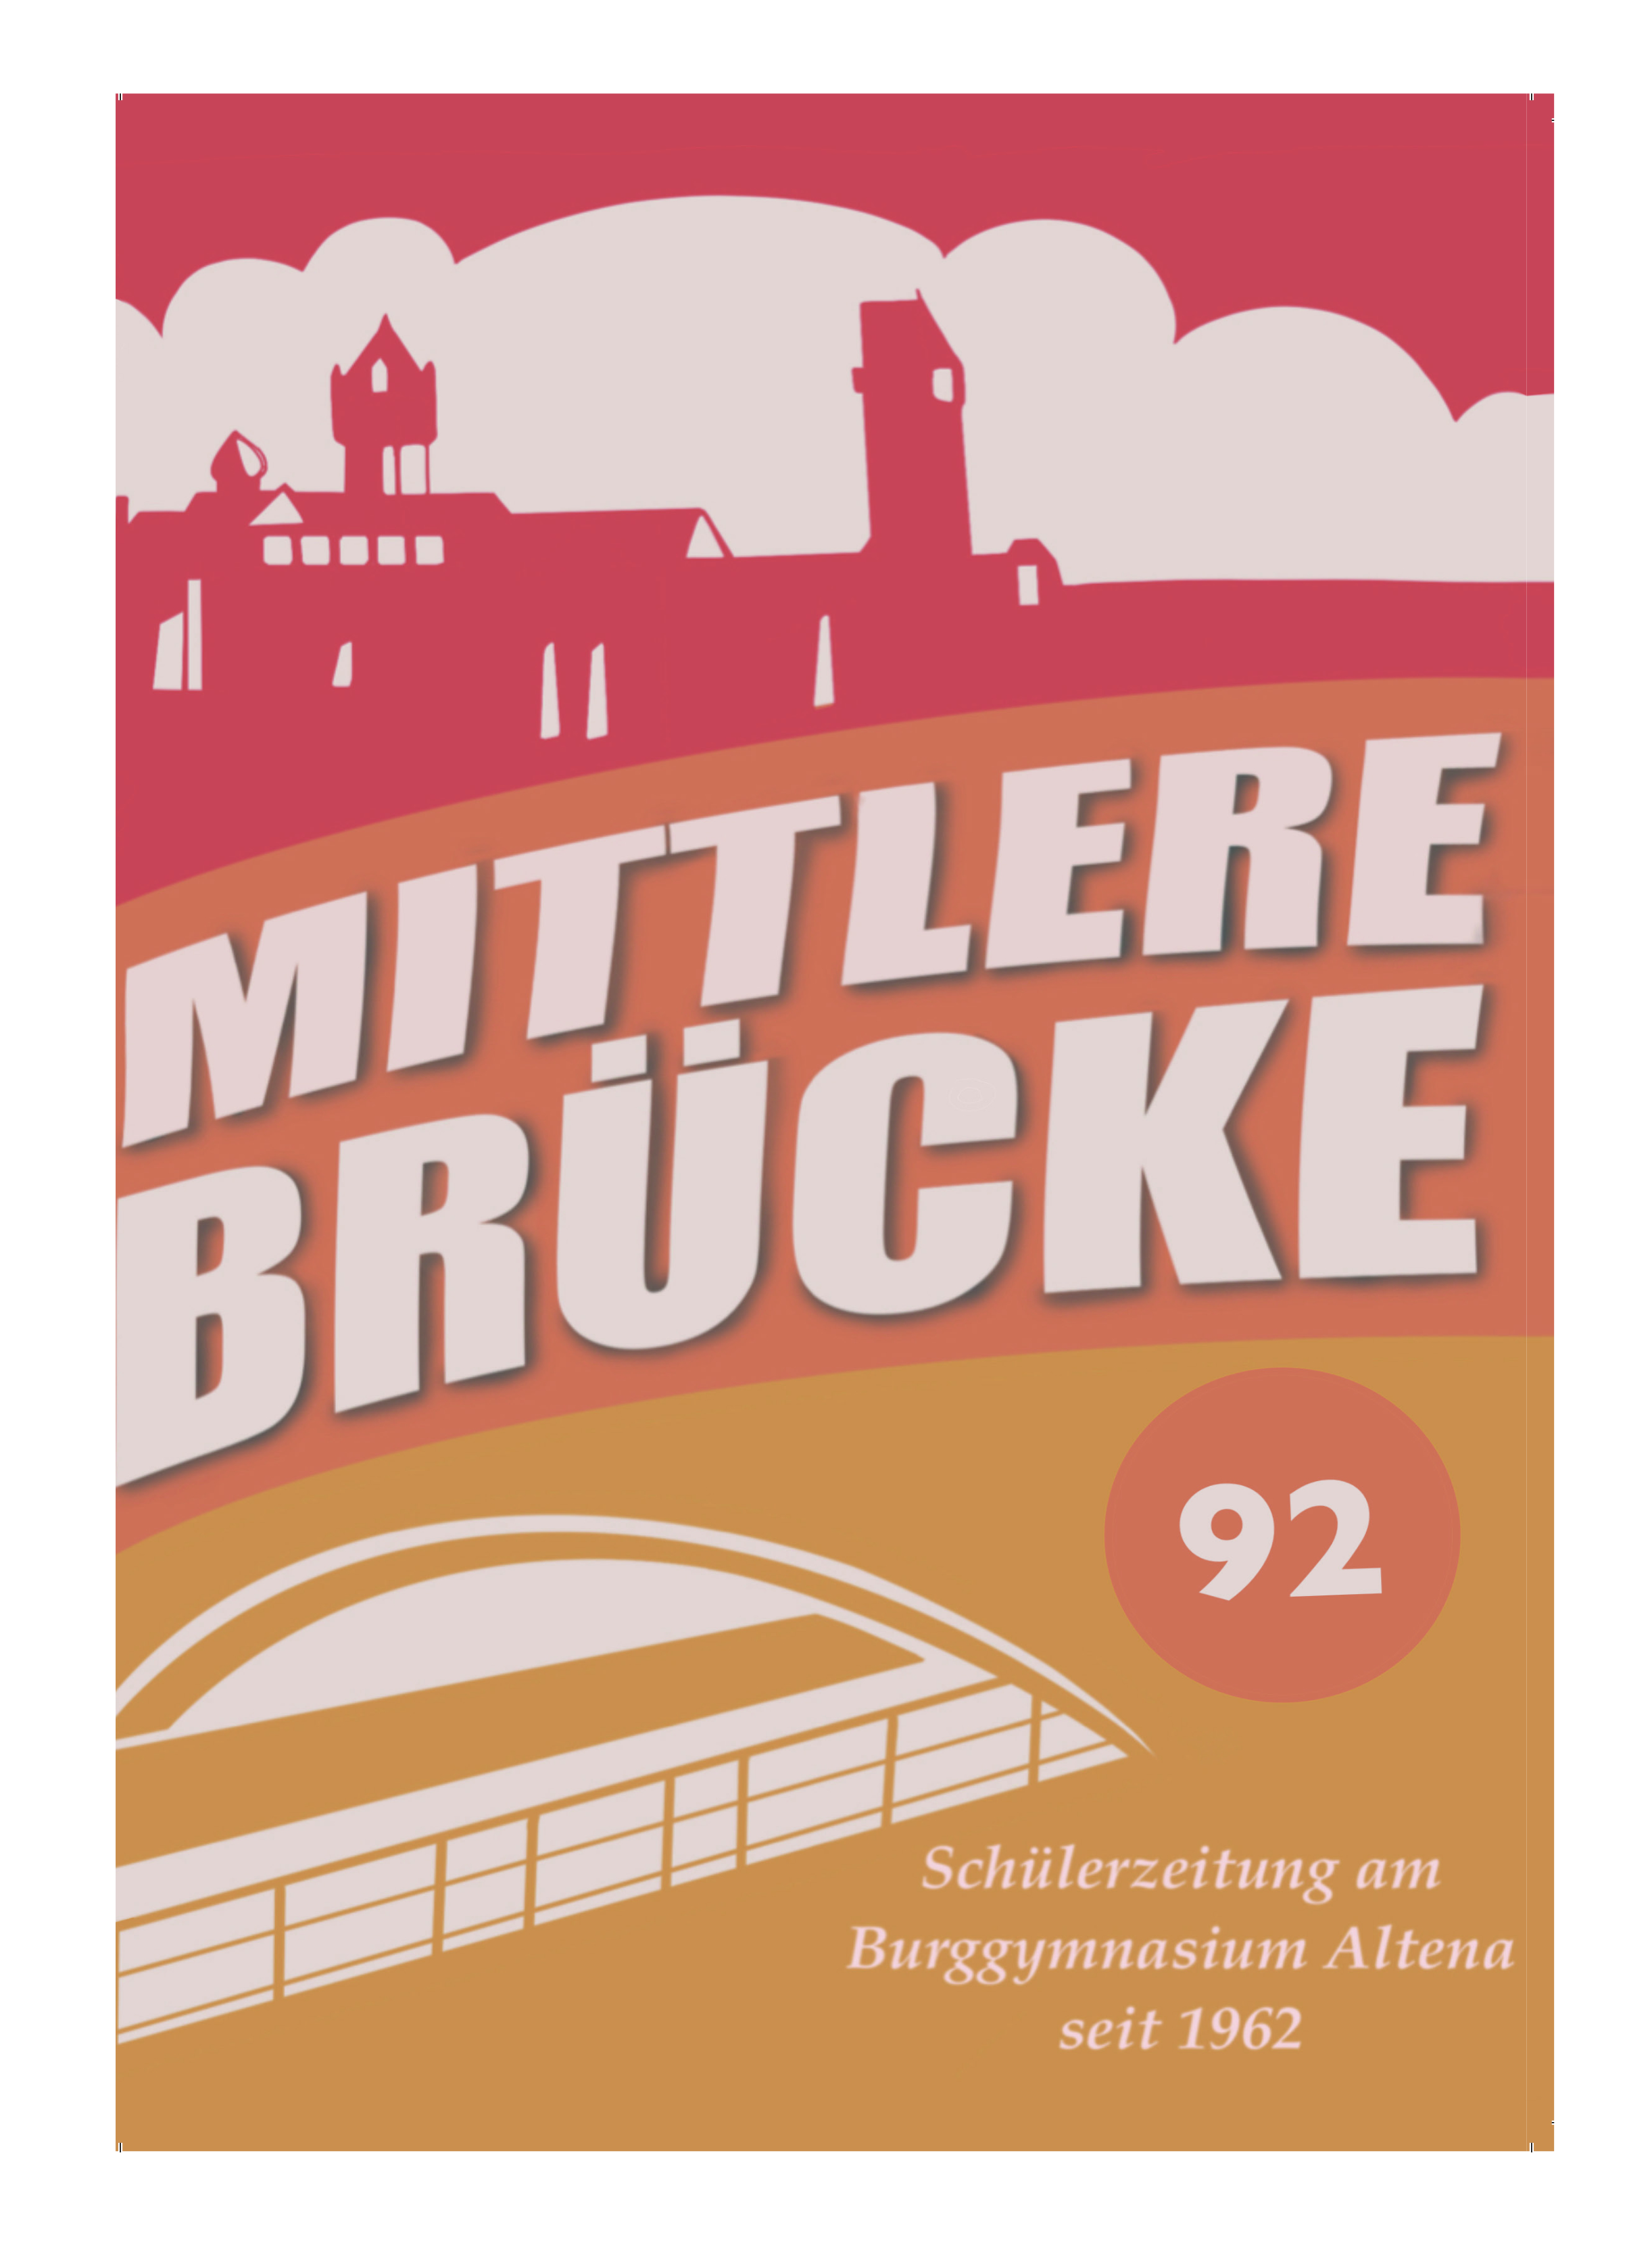 Mittlere Brücke – Die Tradition lebt weiter!